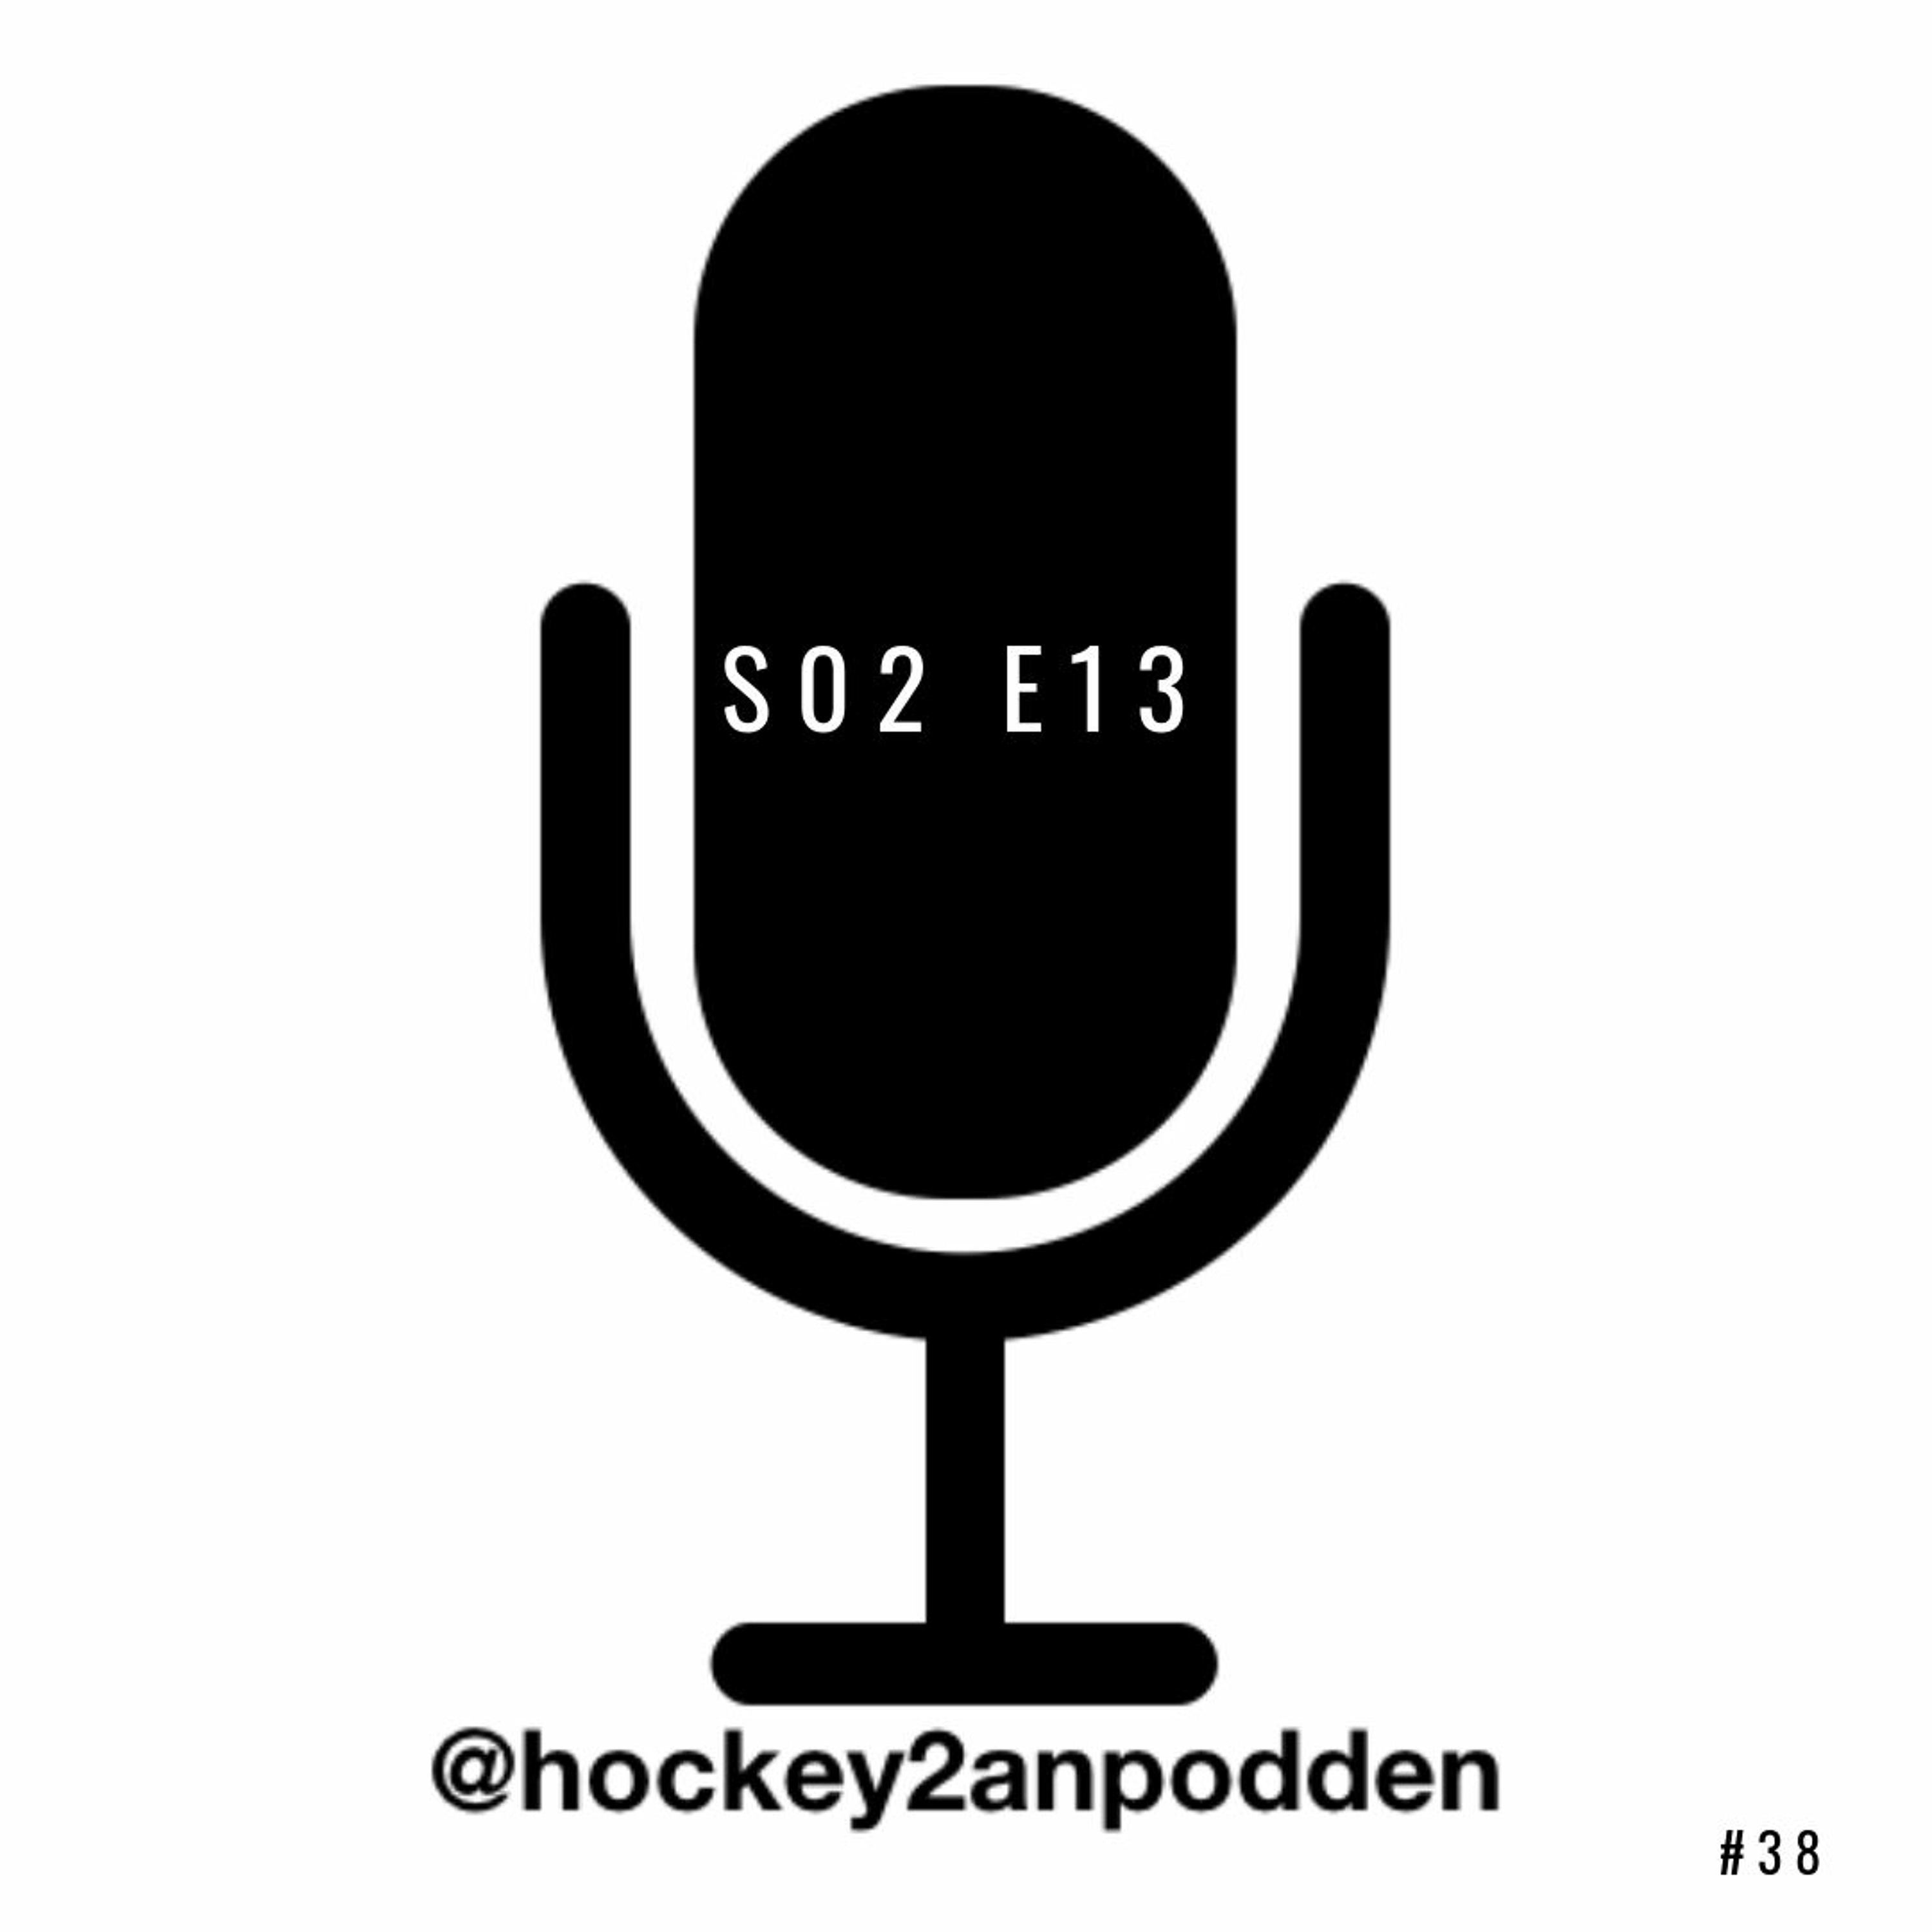 Avsnitt 38: ”De bildar Hockeytvåans NHL-kedja”